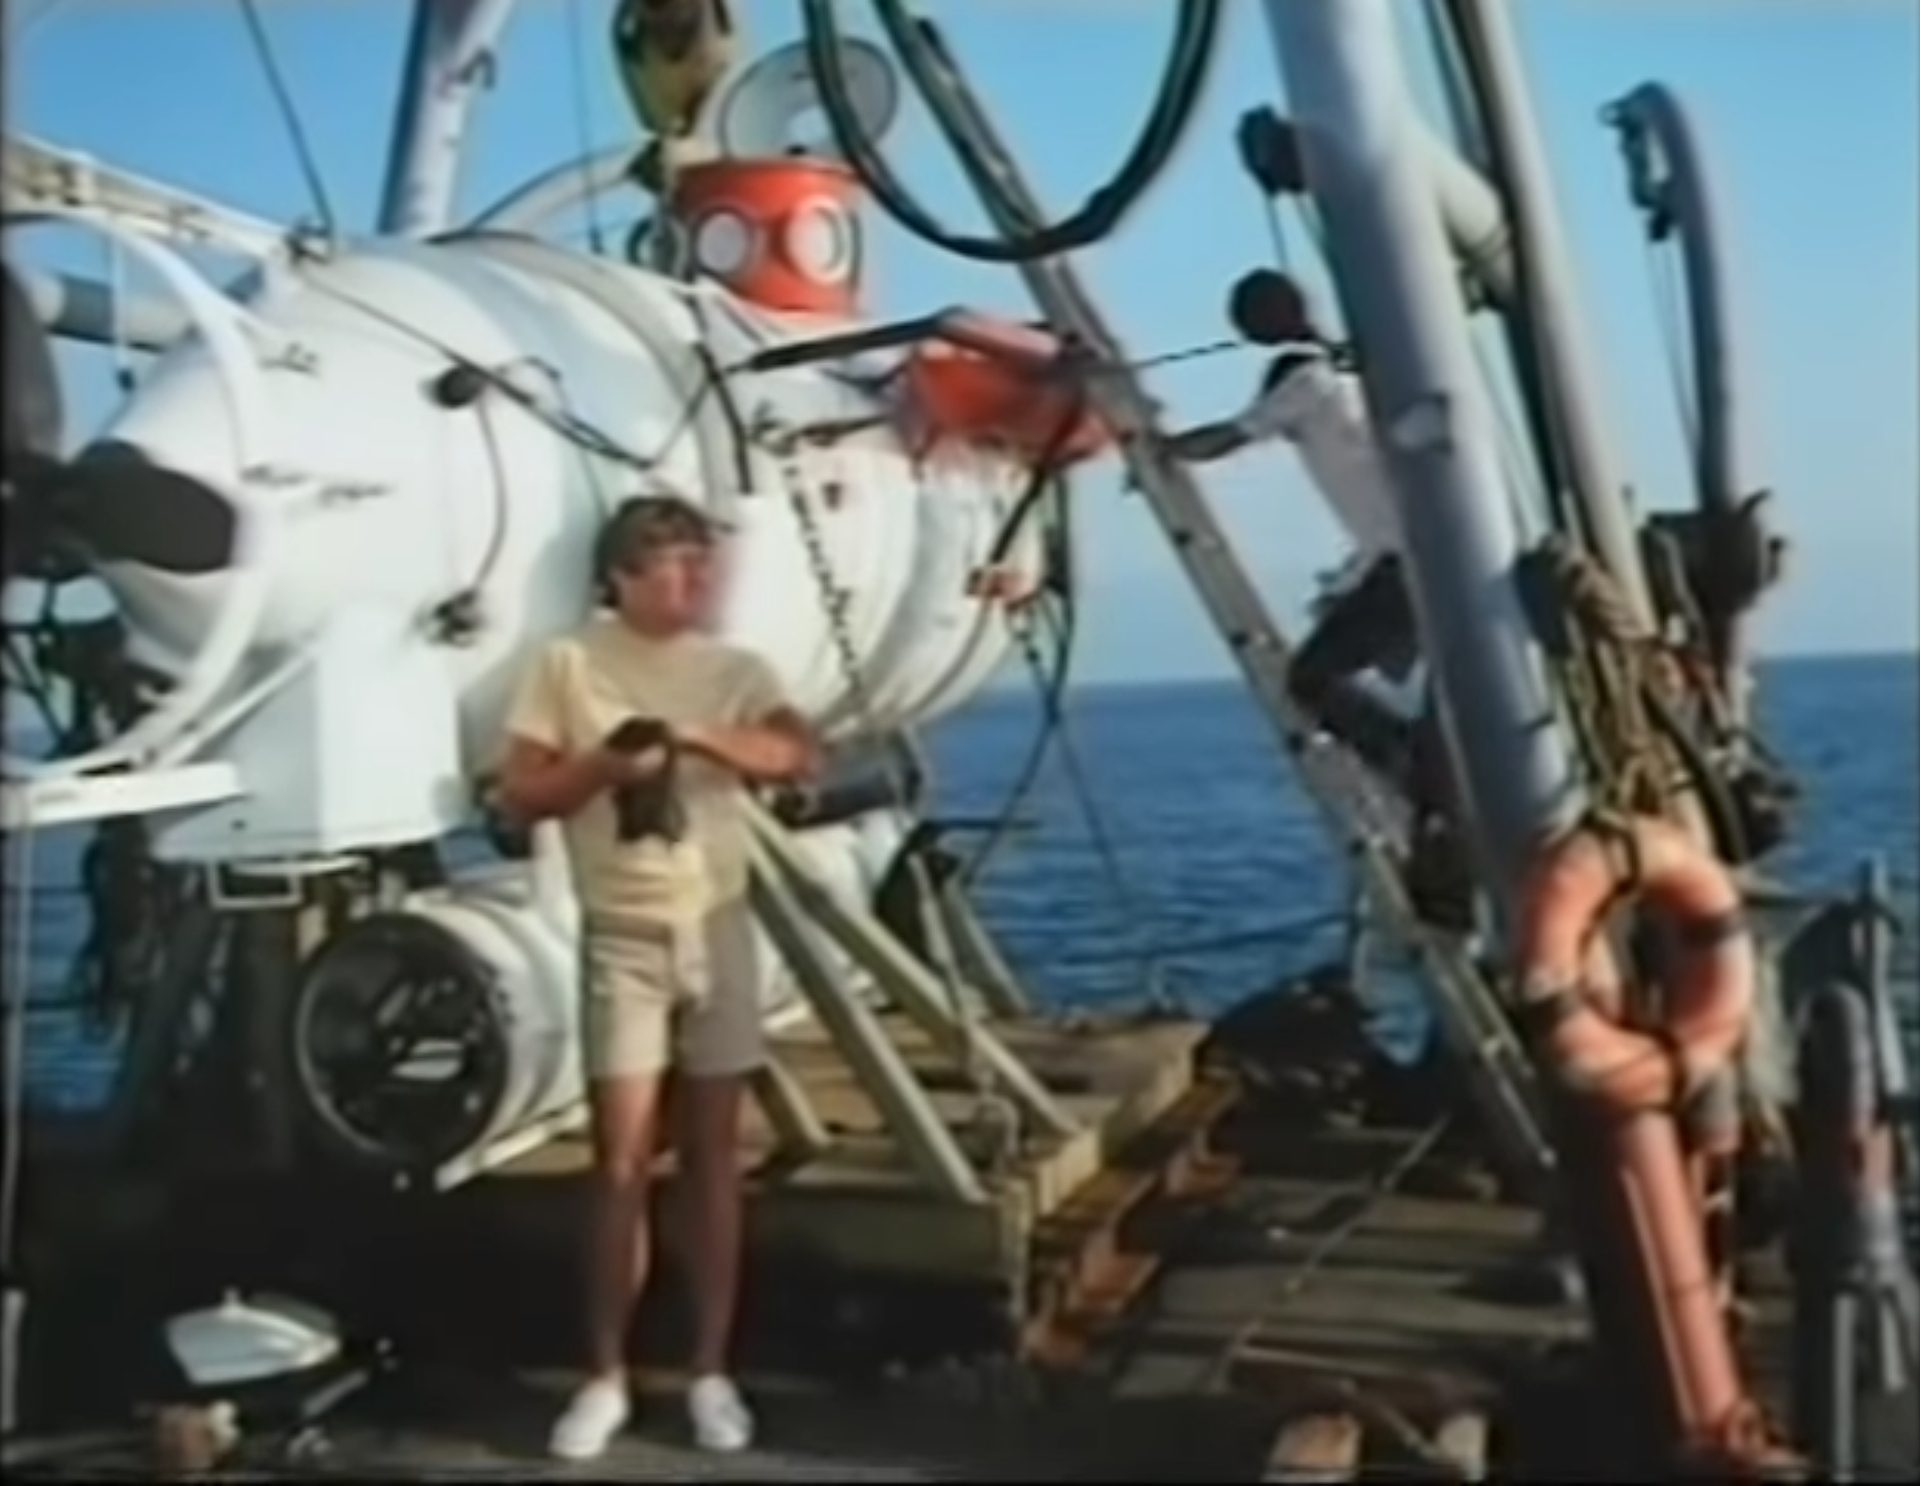 Weißes Mini-U-Boot an Deck eines Schiffes, zwei Männer bei Vorbereitungen.